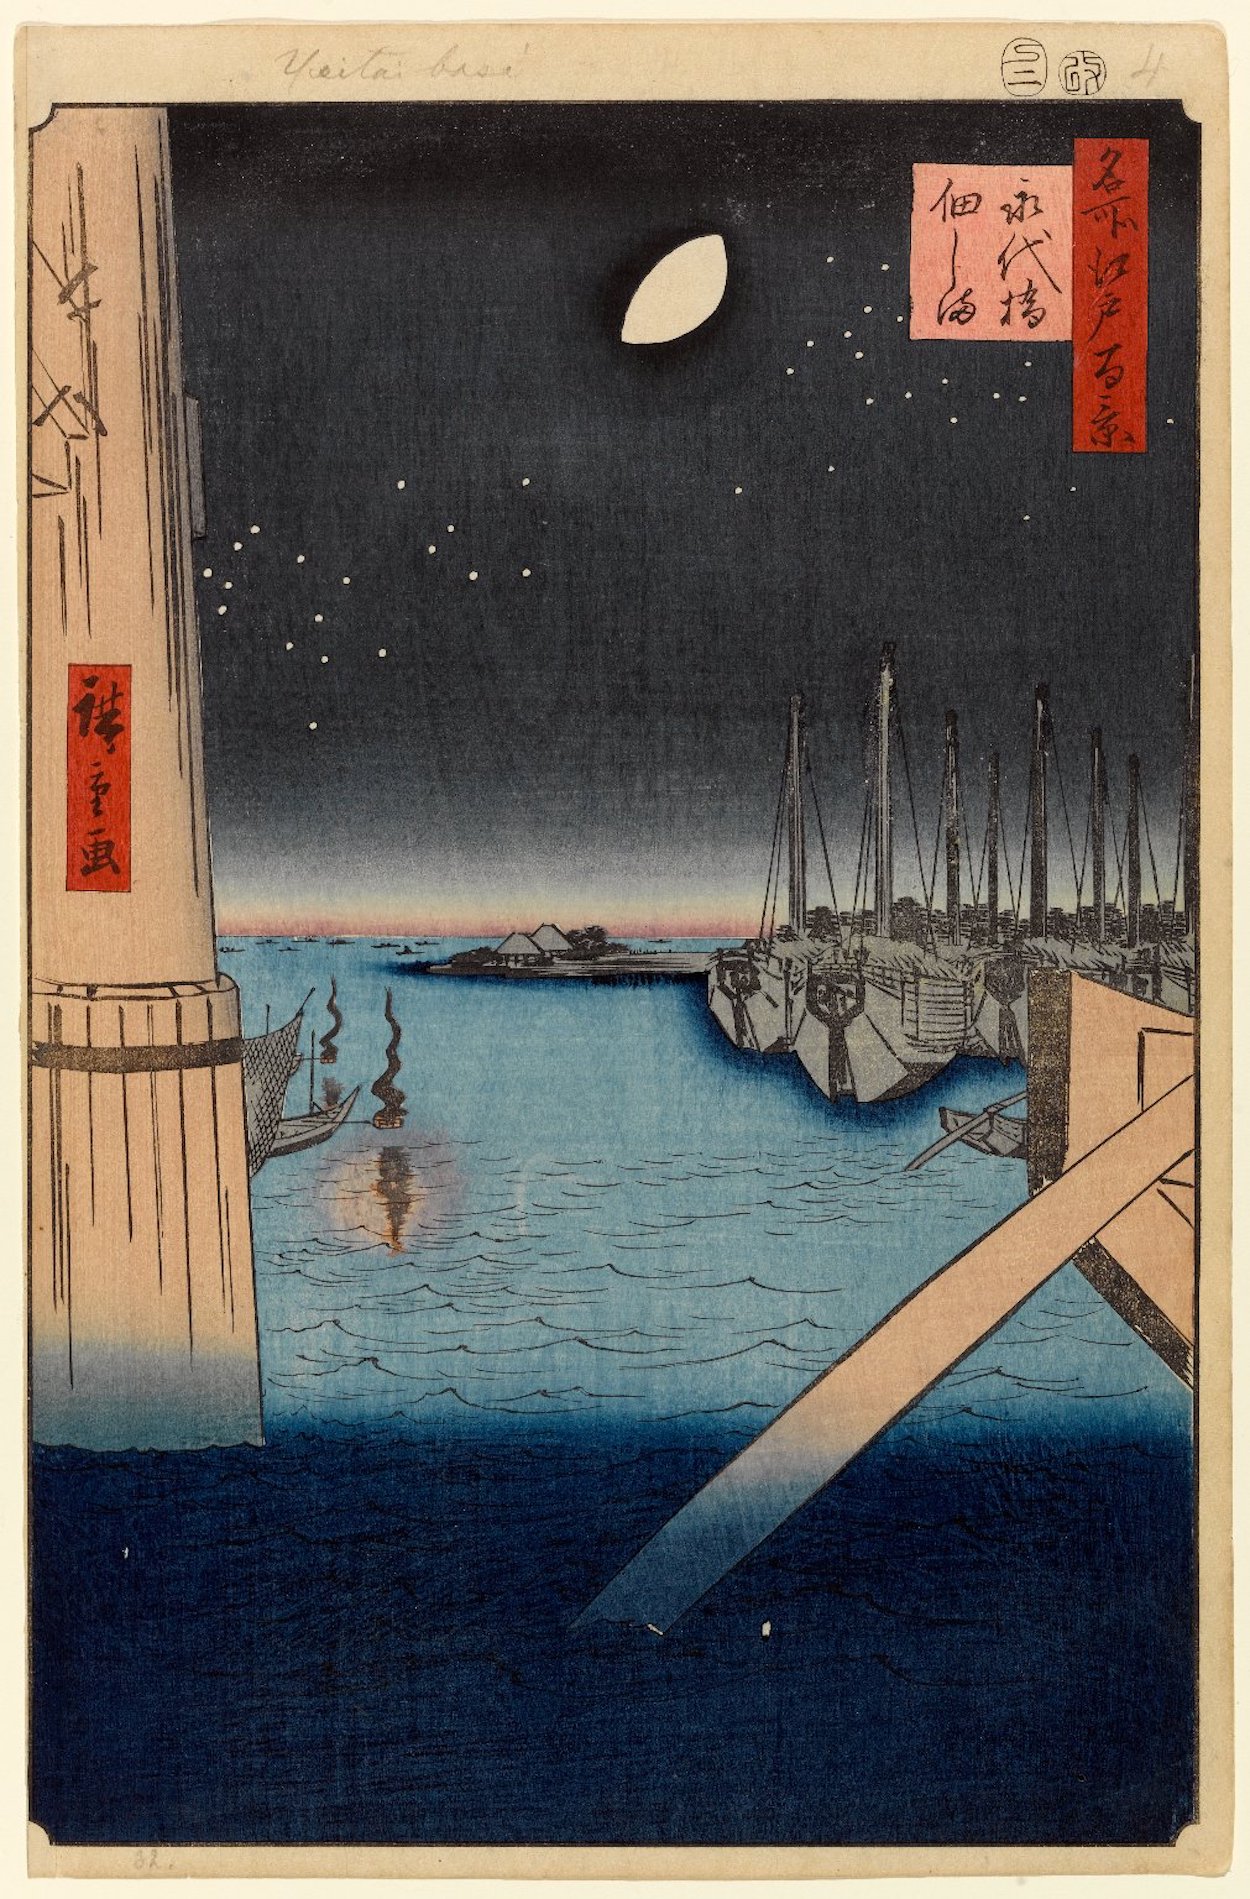 Tsukudajima z Eitai mostu, č. 4 by  Hiroshige - 1857 - 34 x 23 cm 